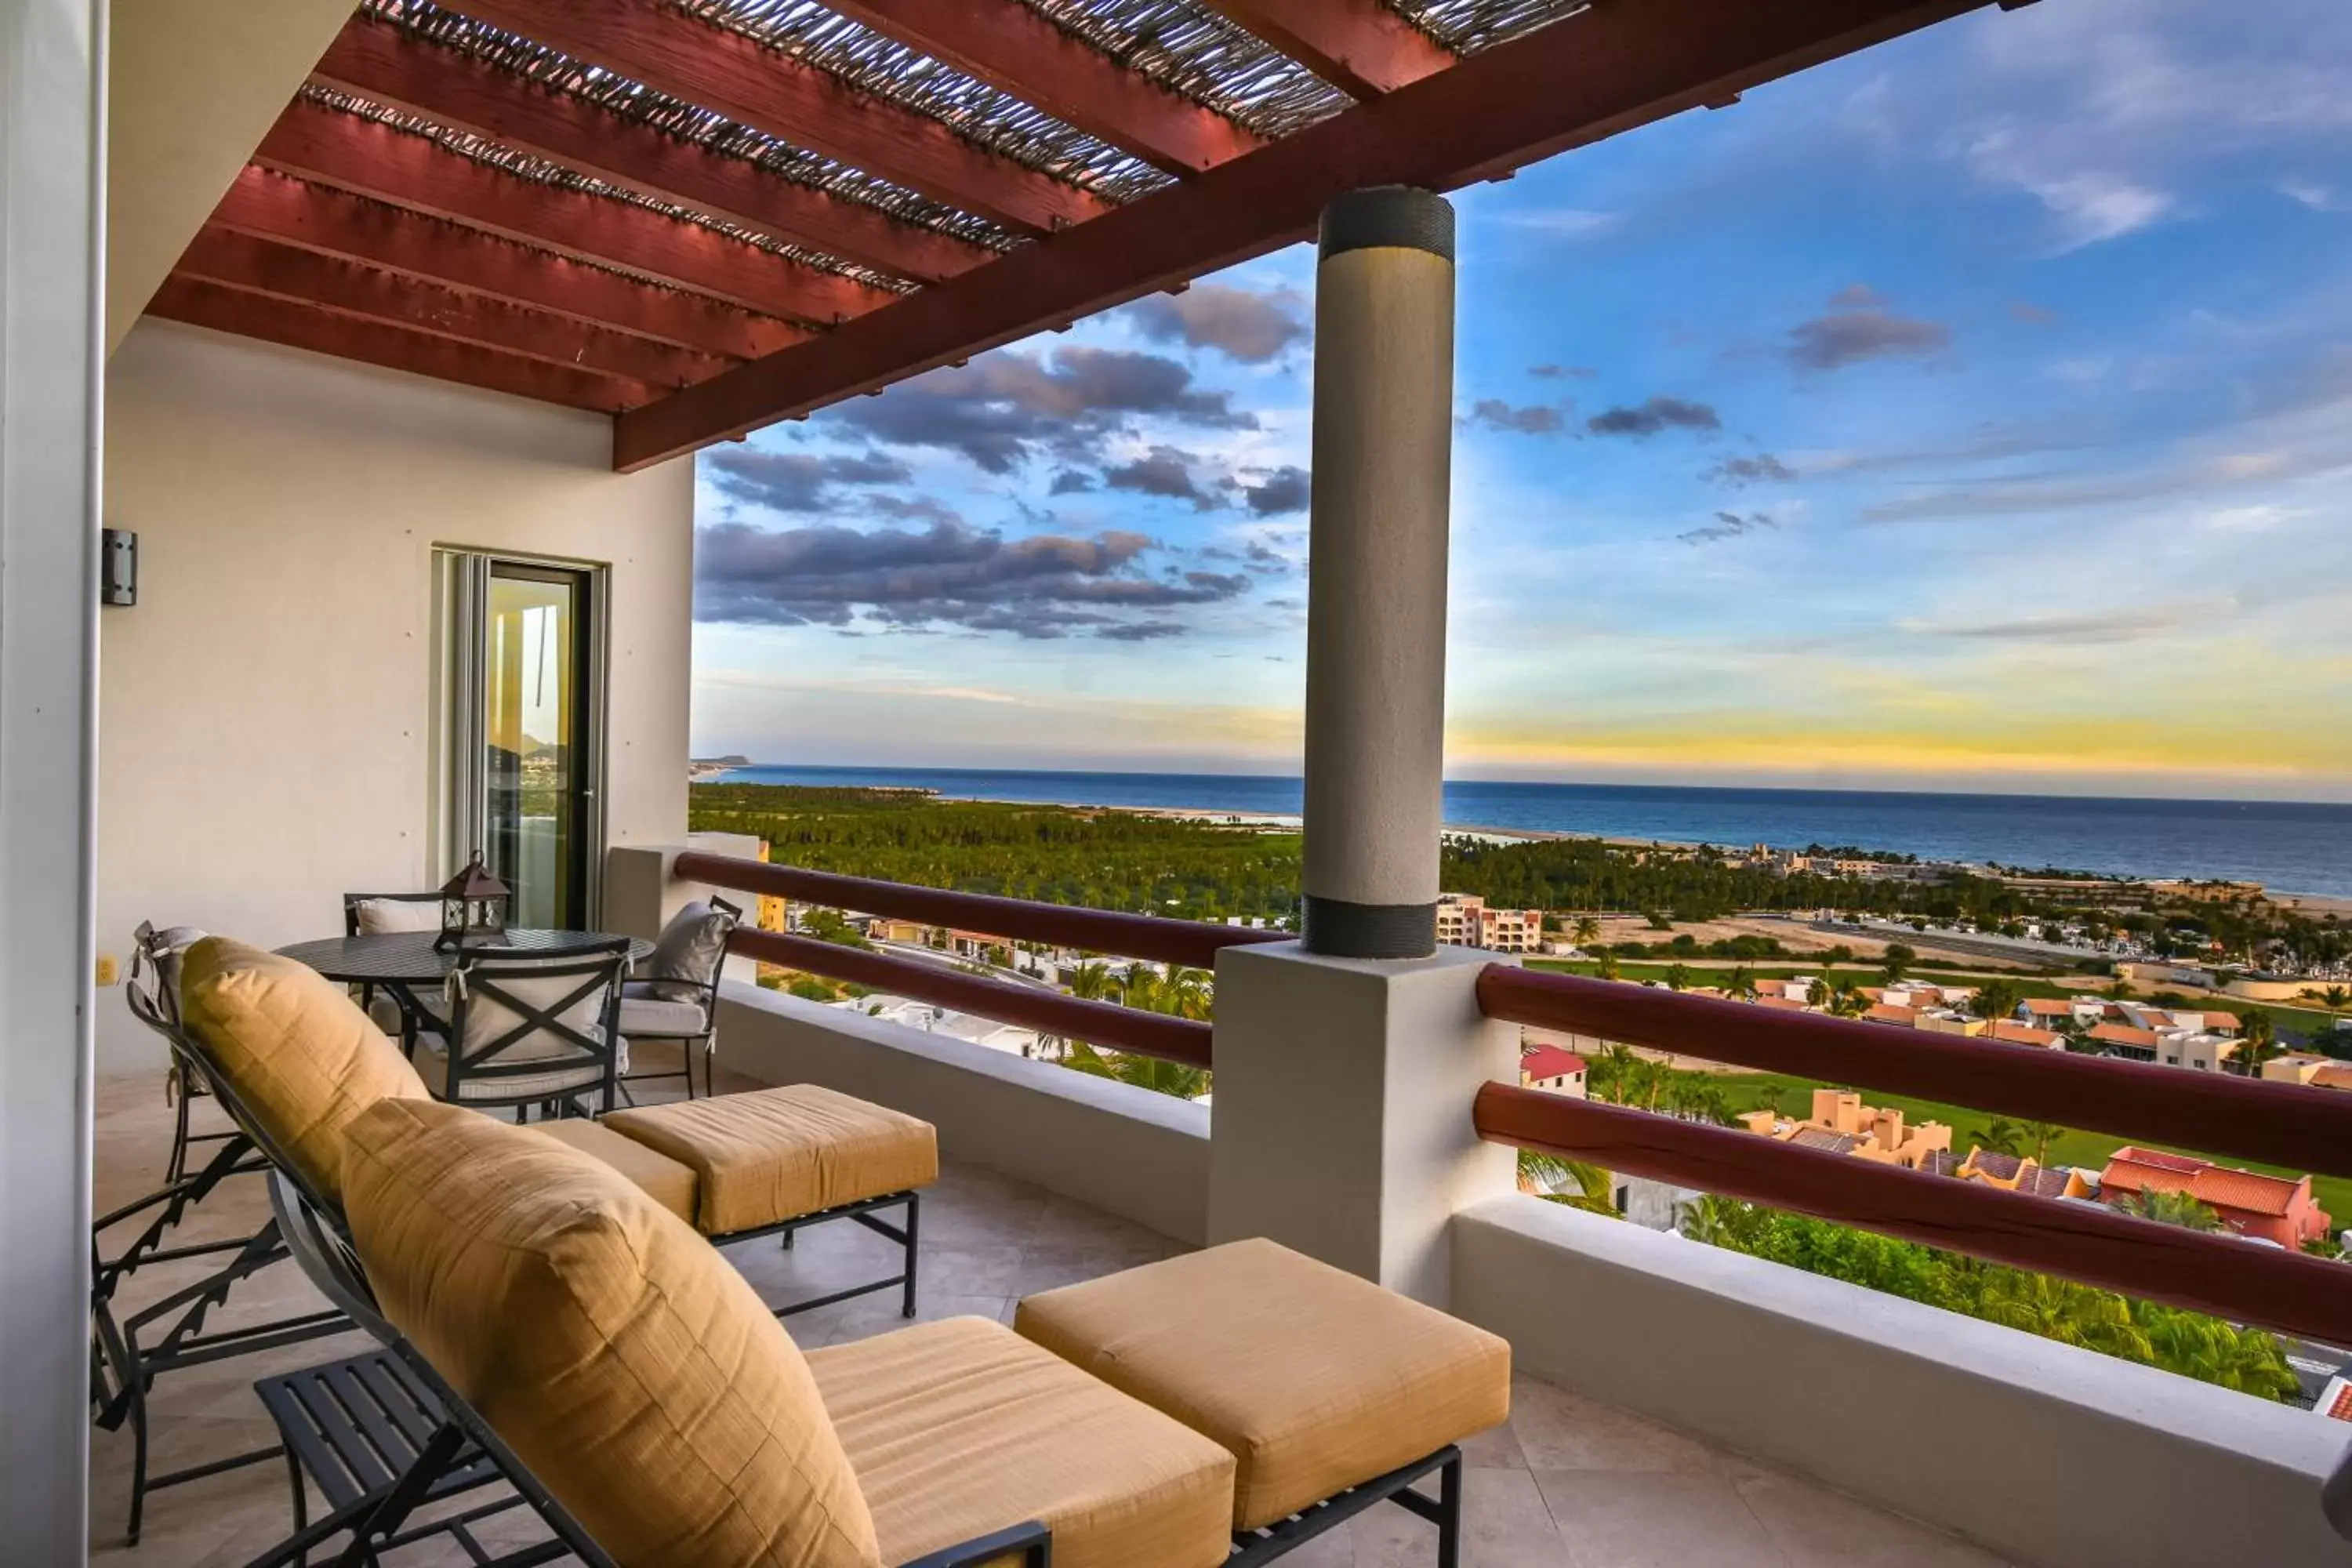 Sea view in Alegranza Luxury Resort - All Master Suite